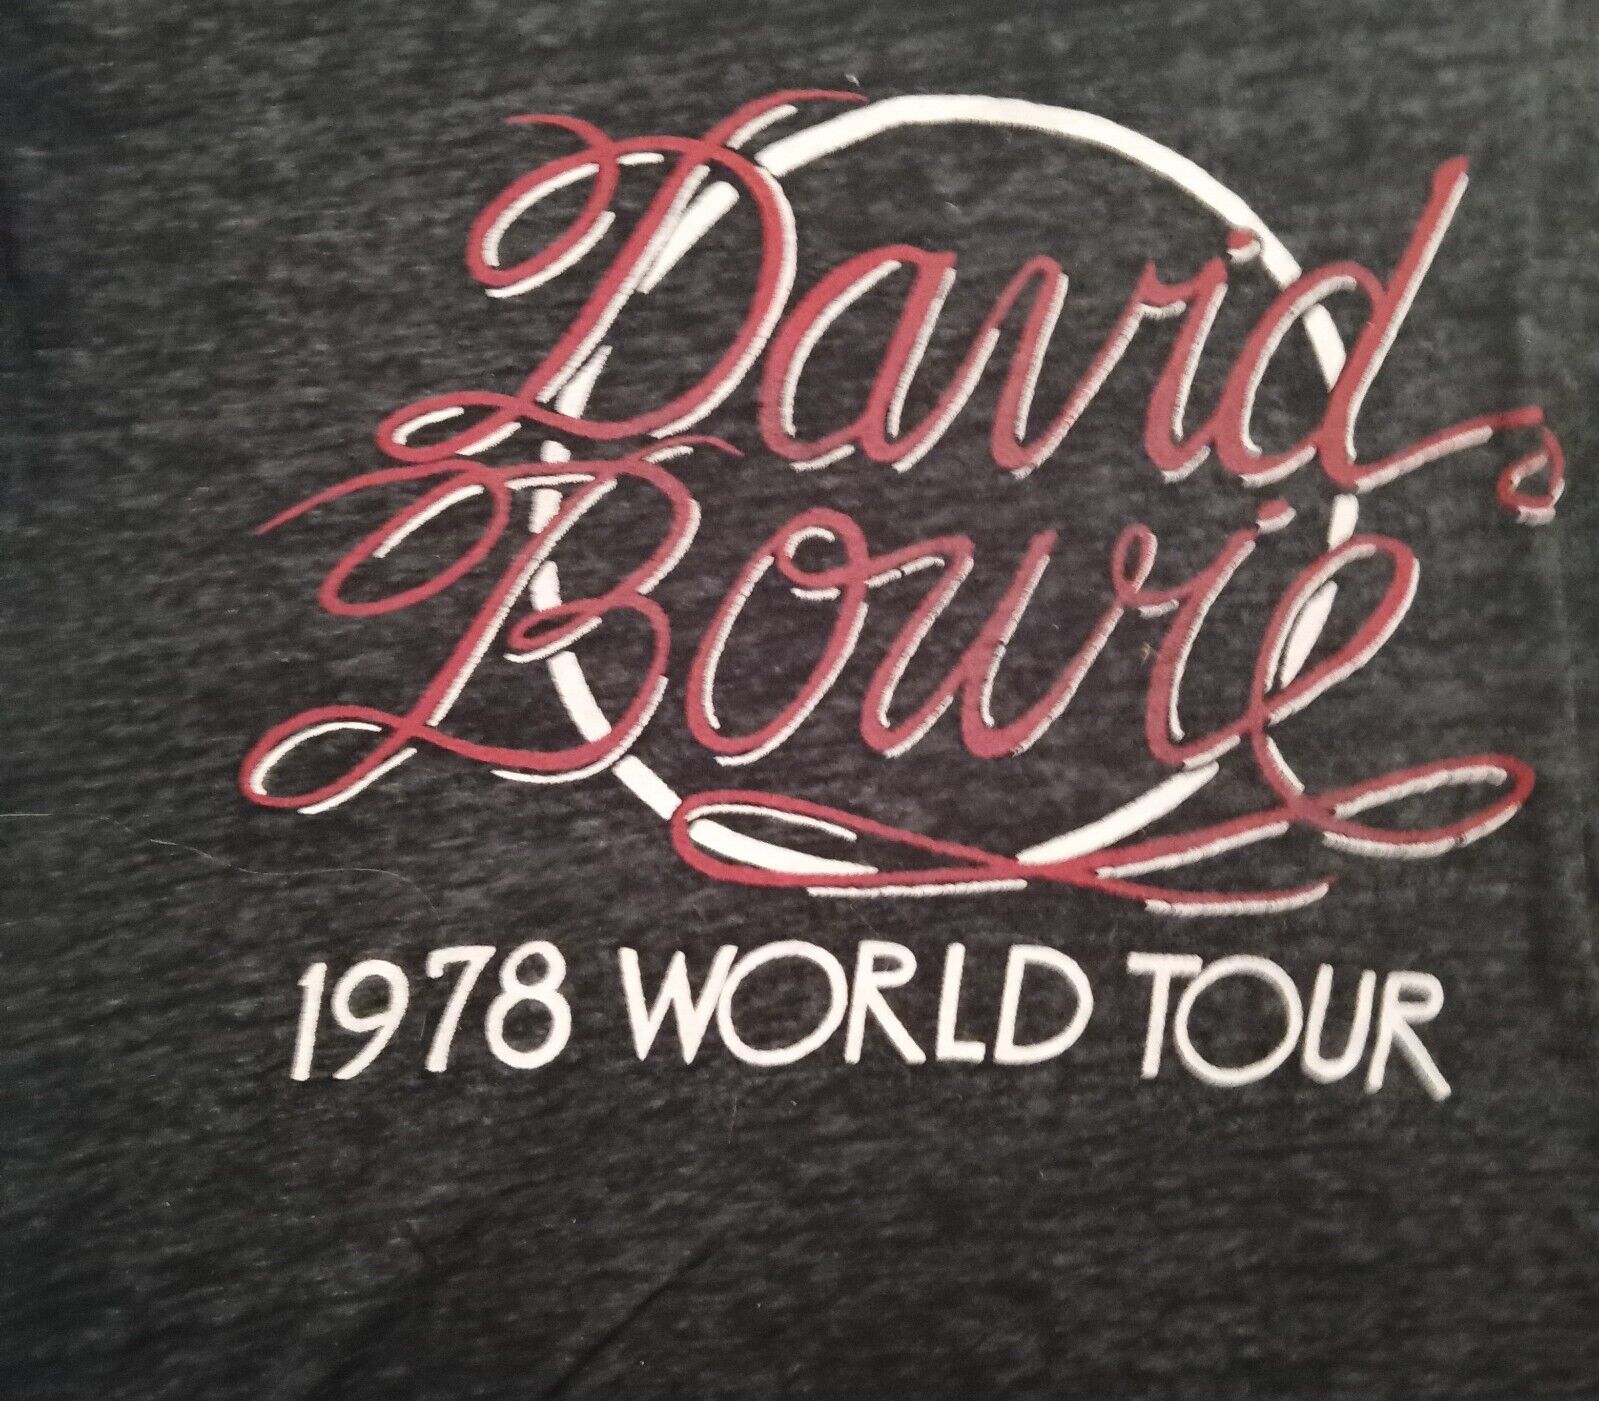 David Bowie 1978 World Tour Shirt